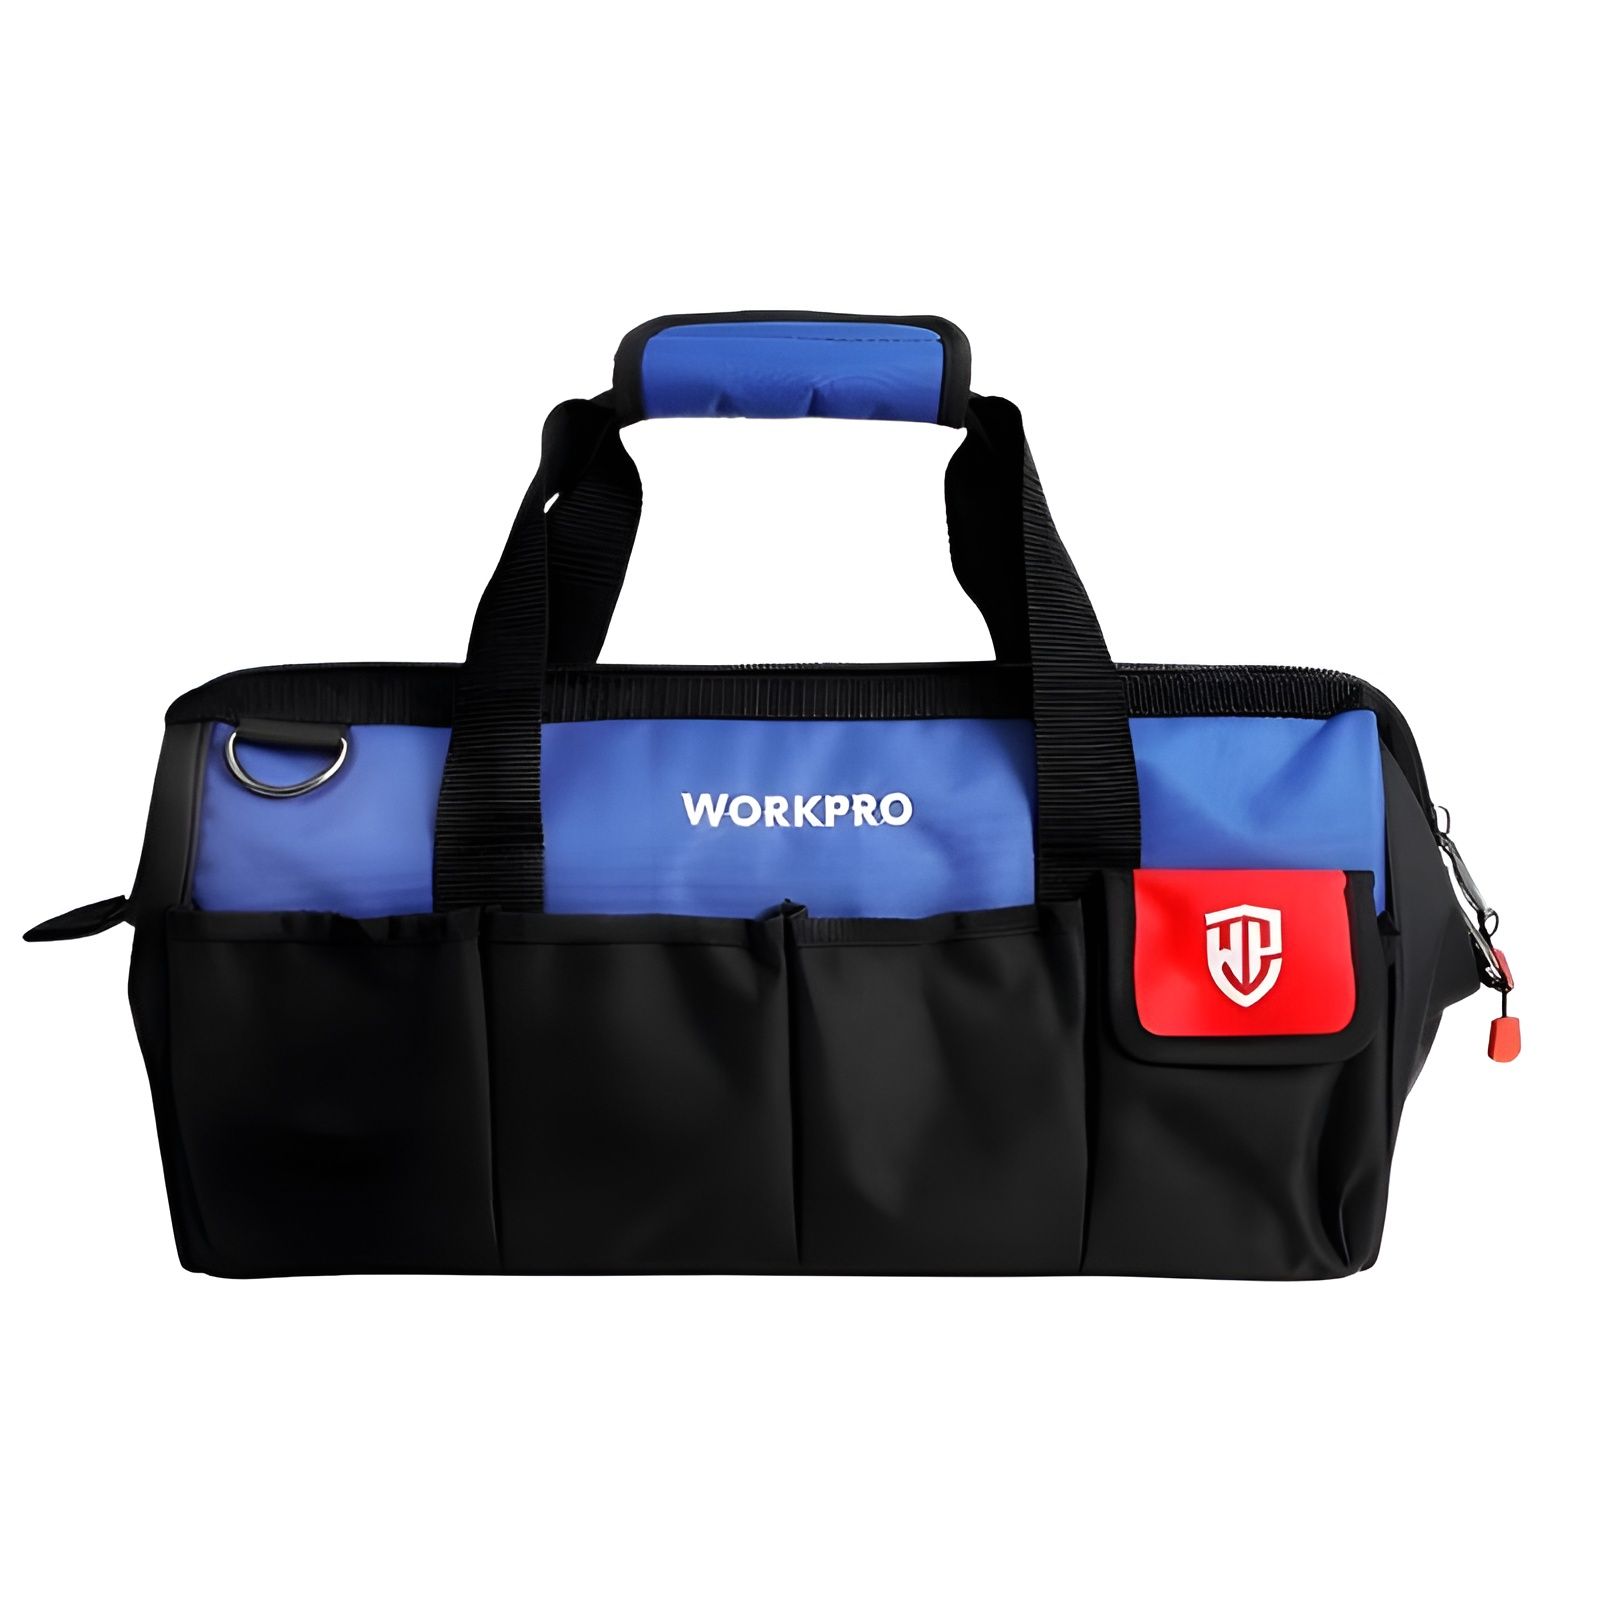  Túi đựng dụng cụ bằng vải dệt, kích thước 300mm (12 inches)
Workpro - WP281003 